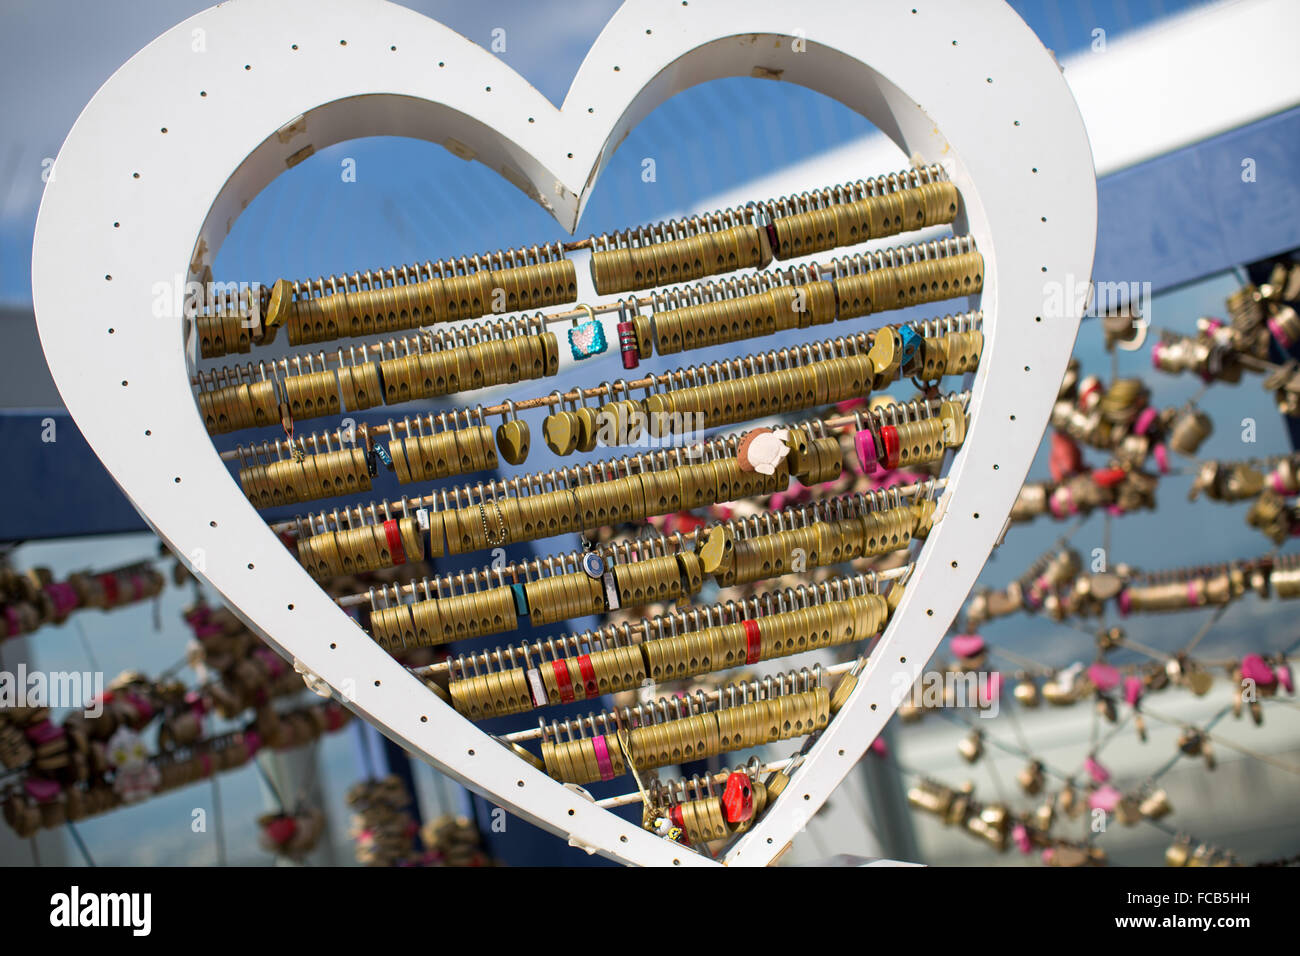 2 novembre 2012 - Osaka, Japon - en forme de cœur symbolique nous encapsuler le pont de jardin flottant au sommet du gratte-ciel Umeda, à Osaka au Japon (crédit Image : © Daniel DeSlover via Zuma sur le fil) Banque D'Images